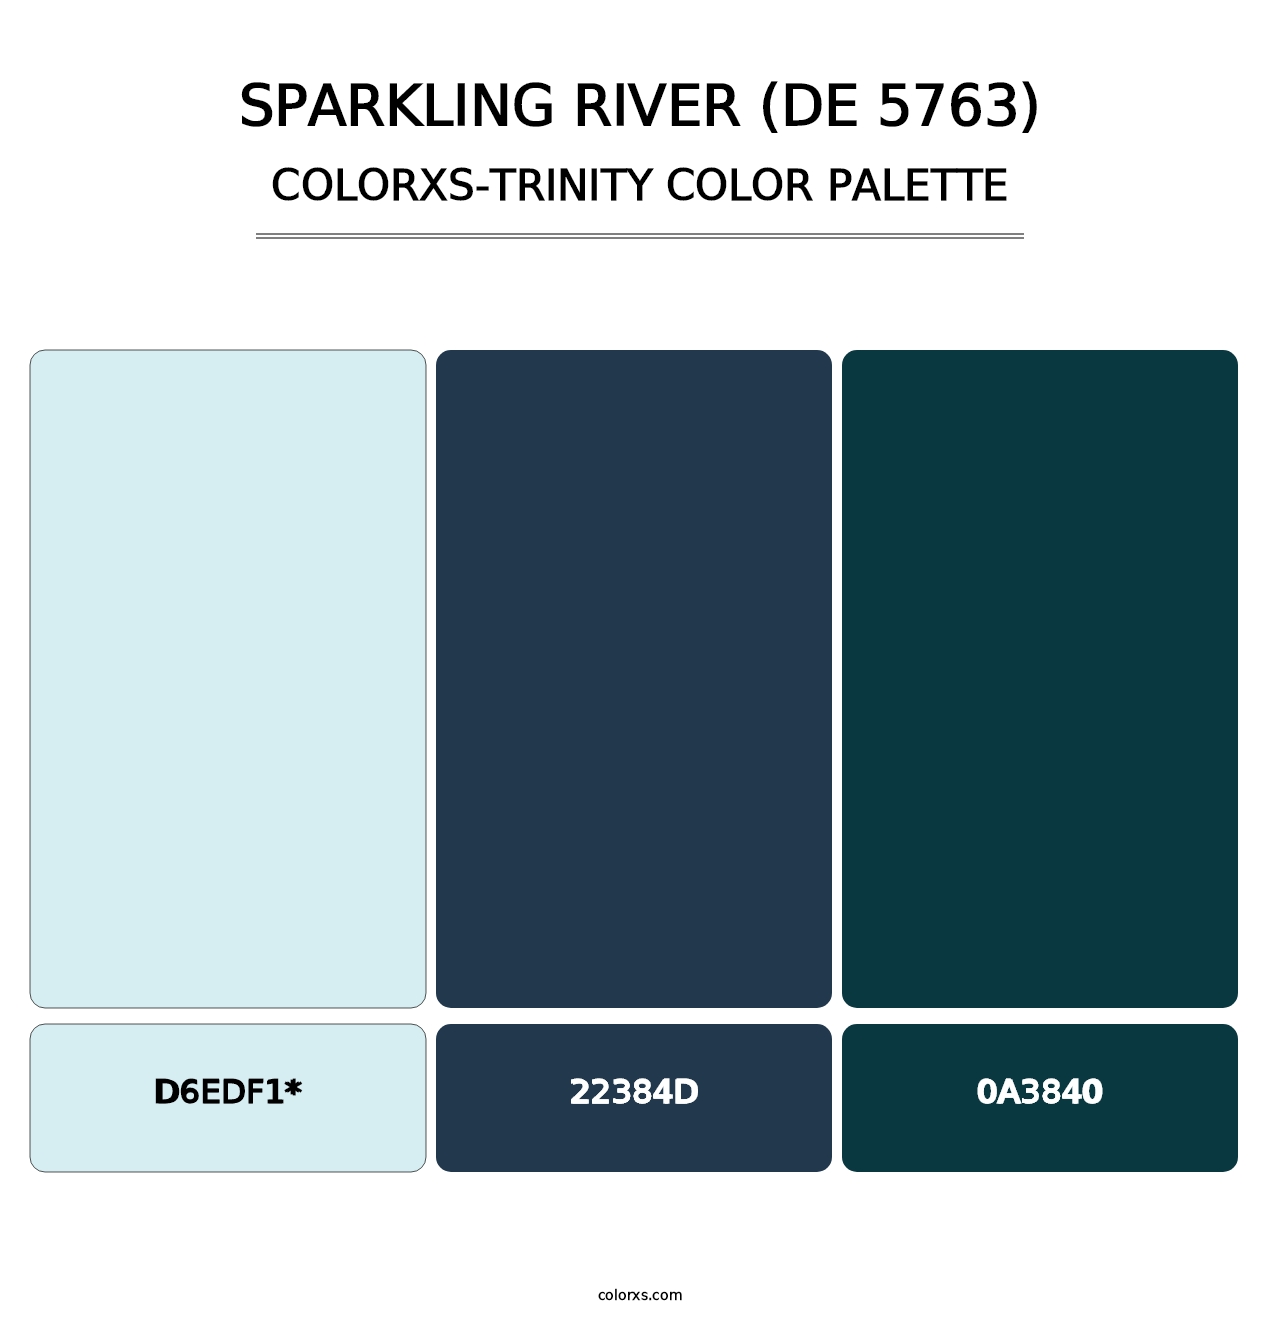 Sparkling River (DE 5763) - Colorxs Trinity Palette